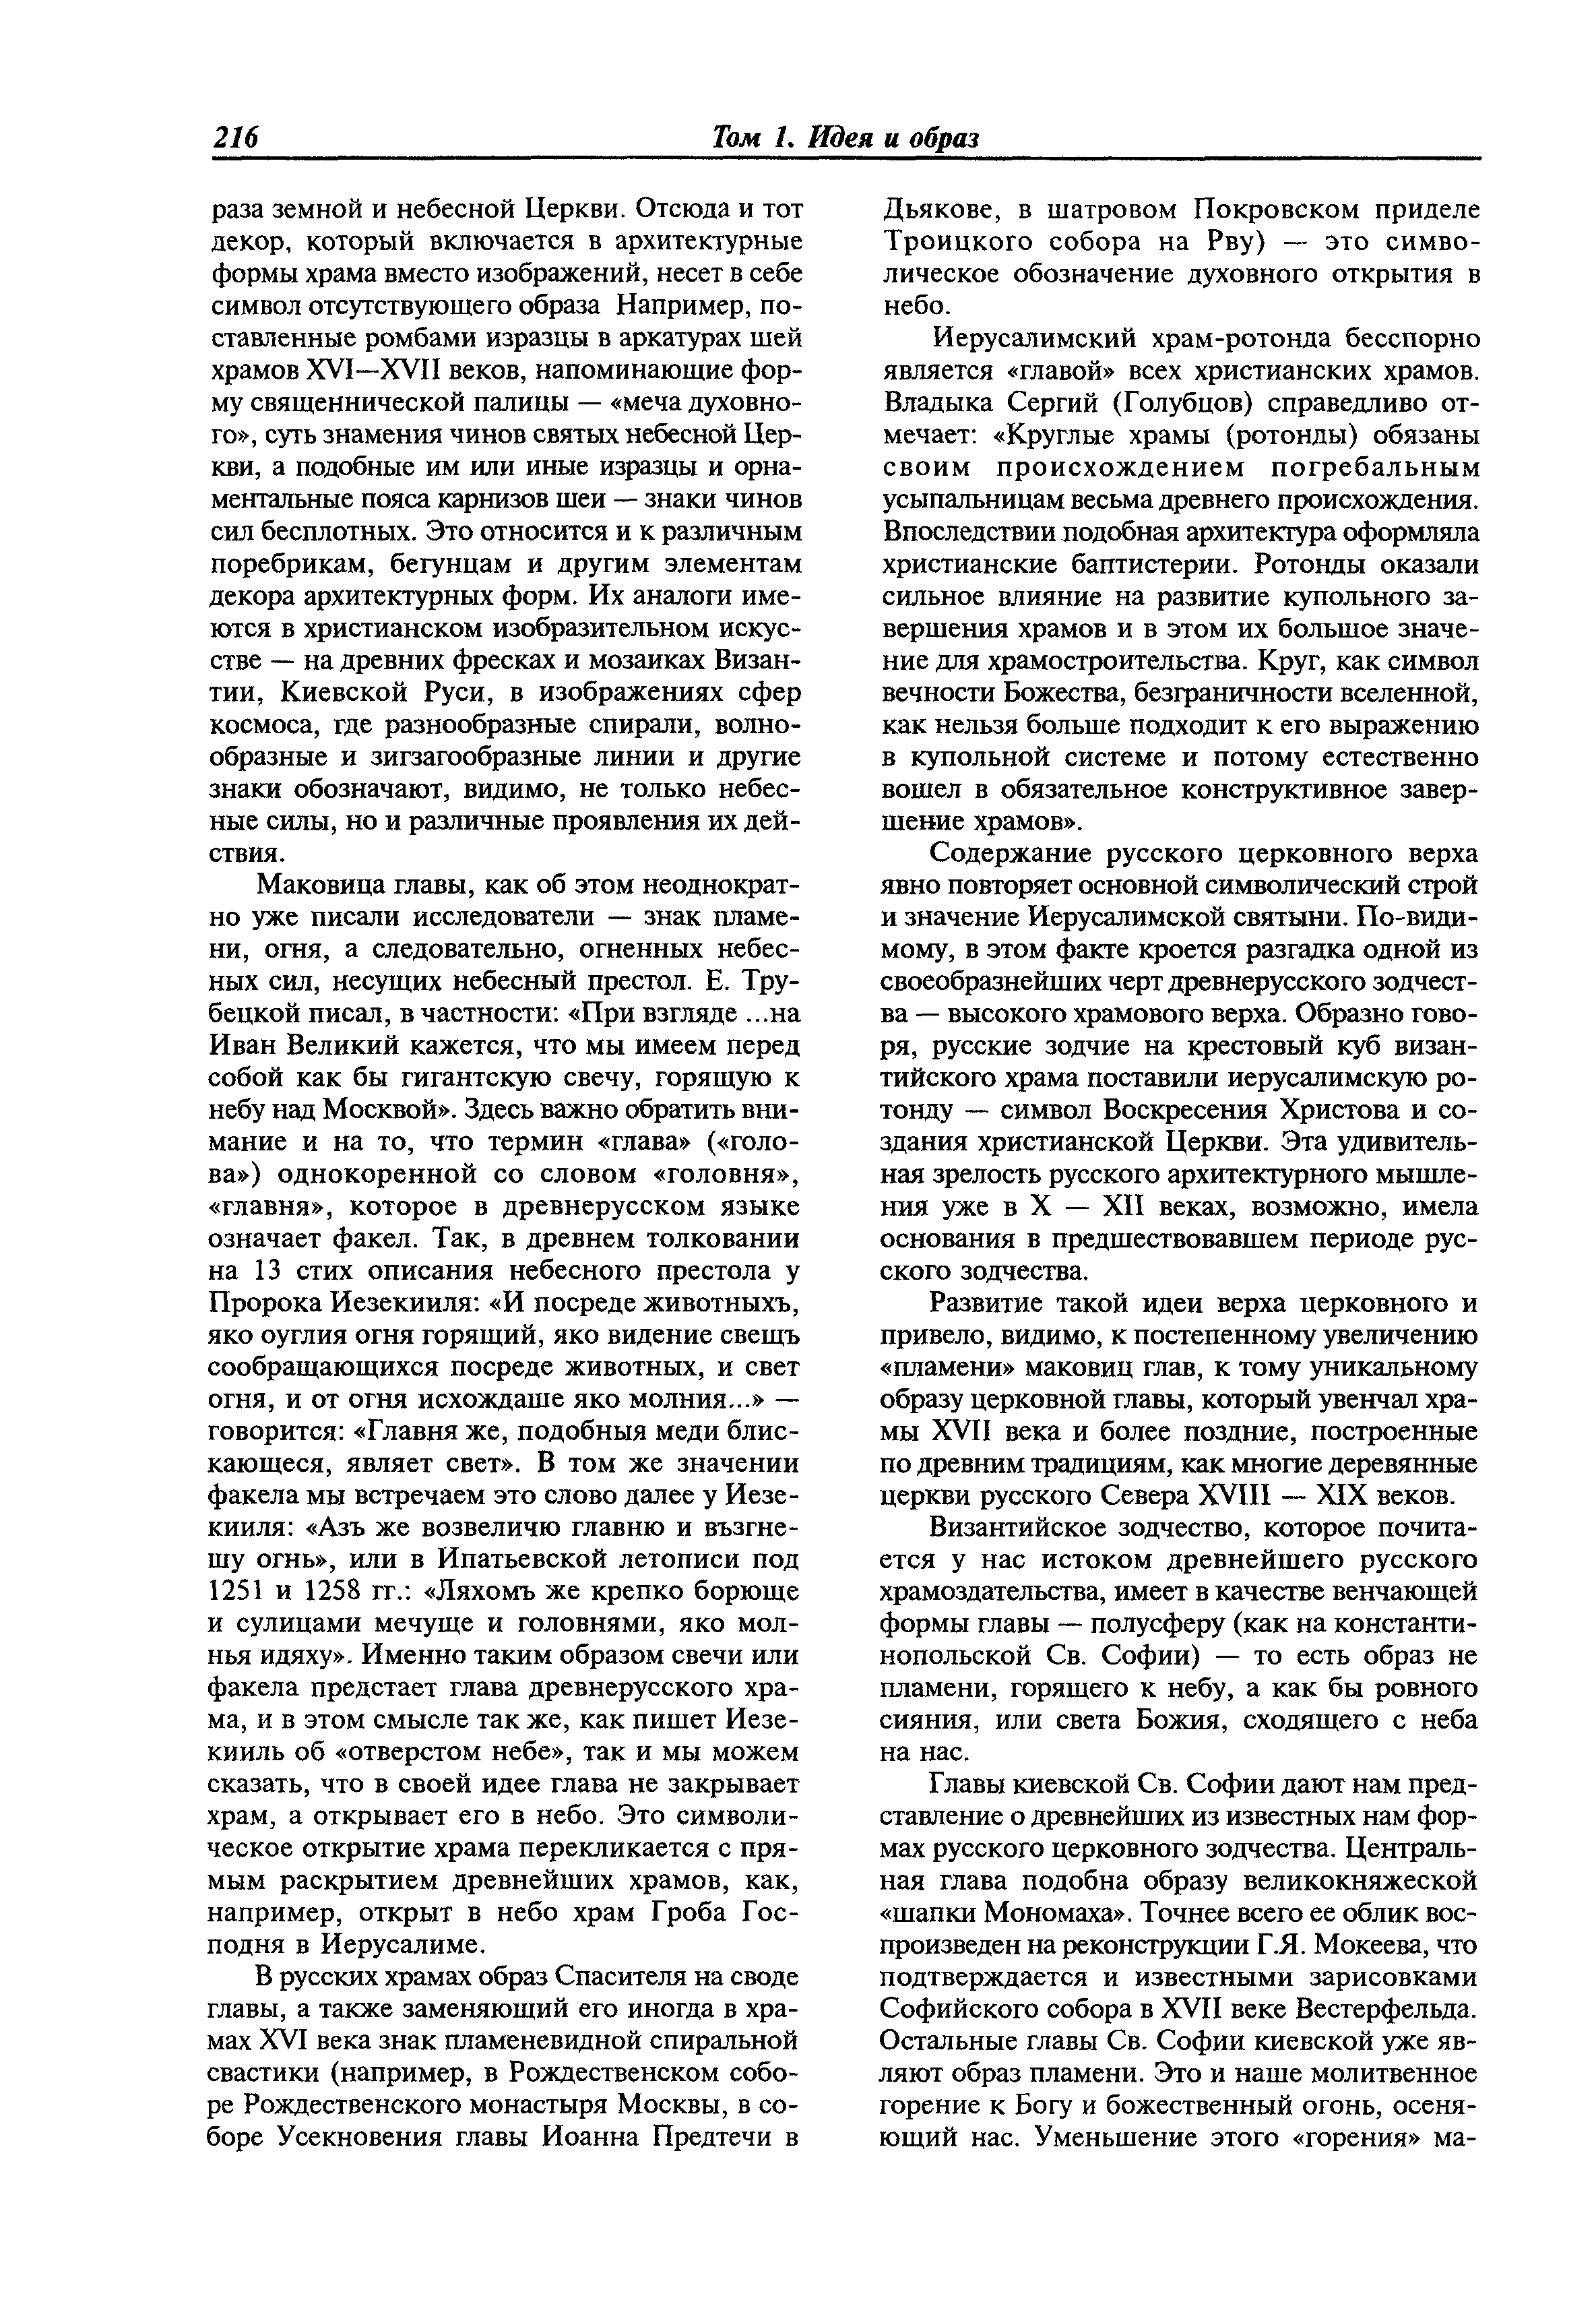 МДС 31-9.2003